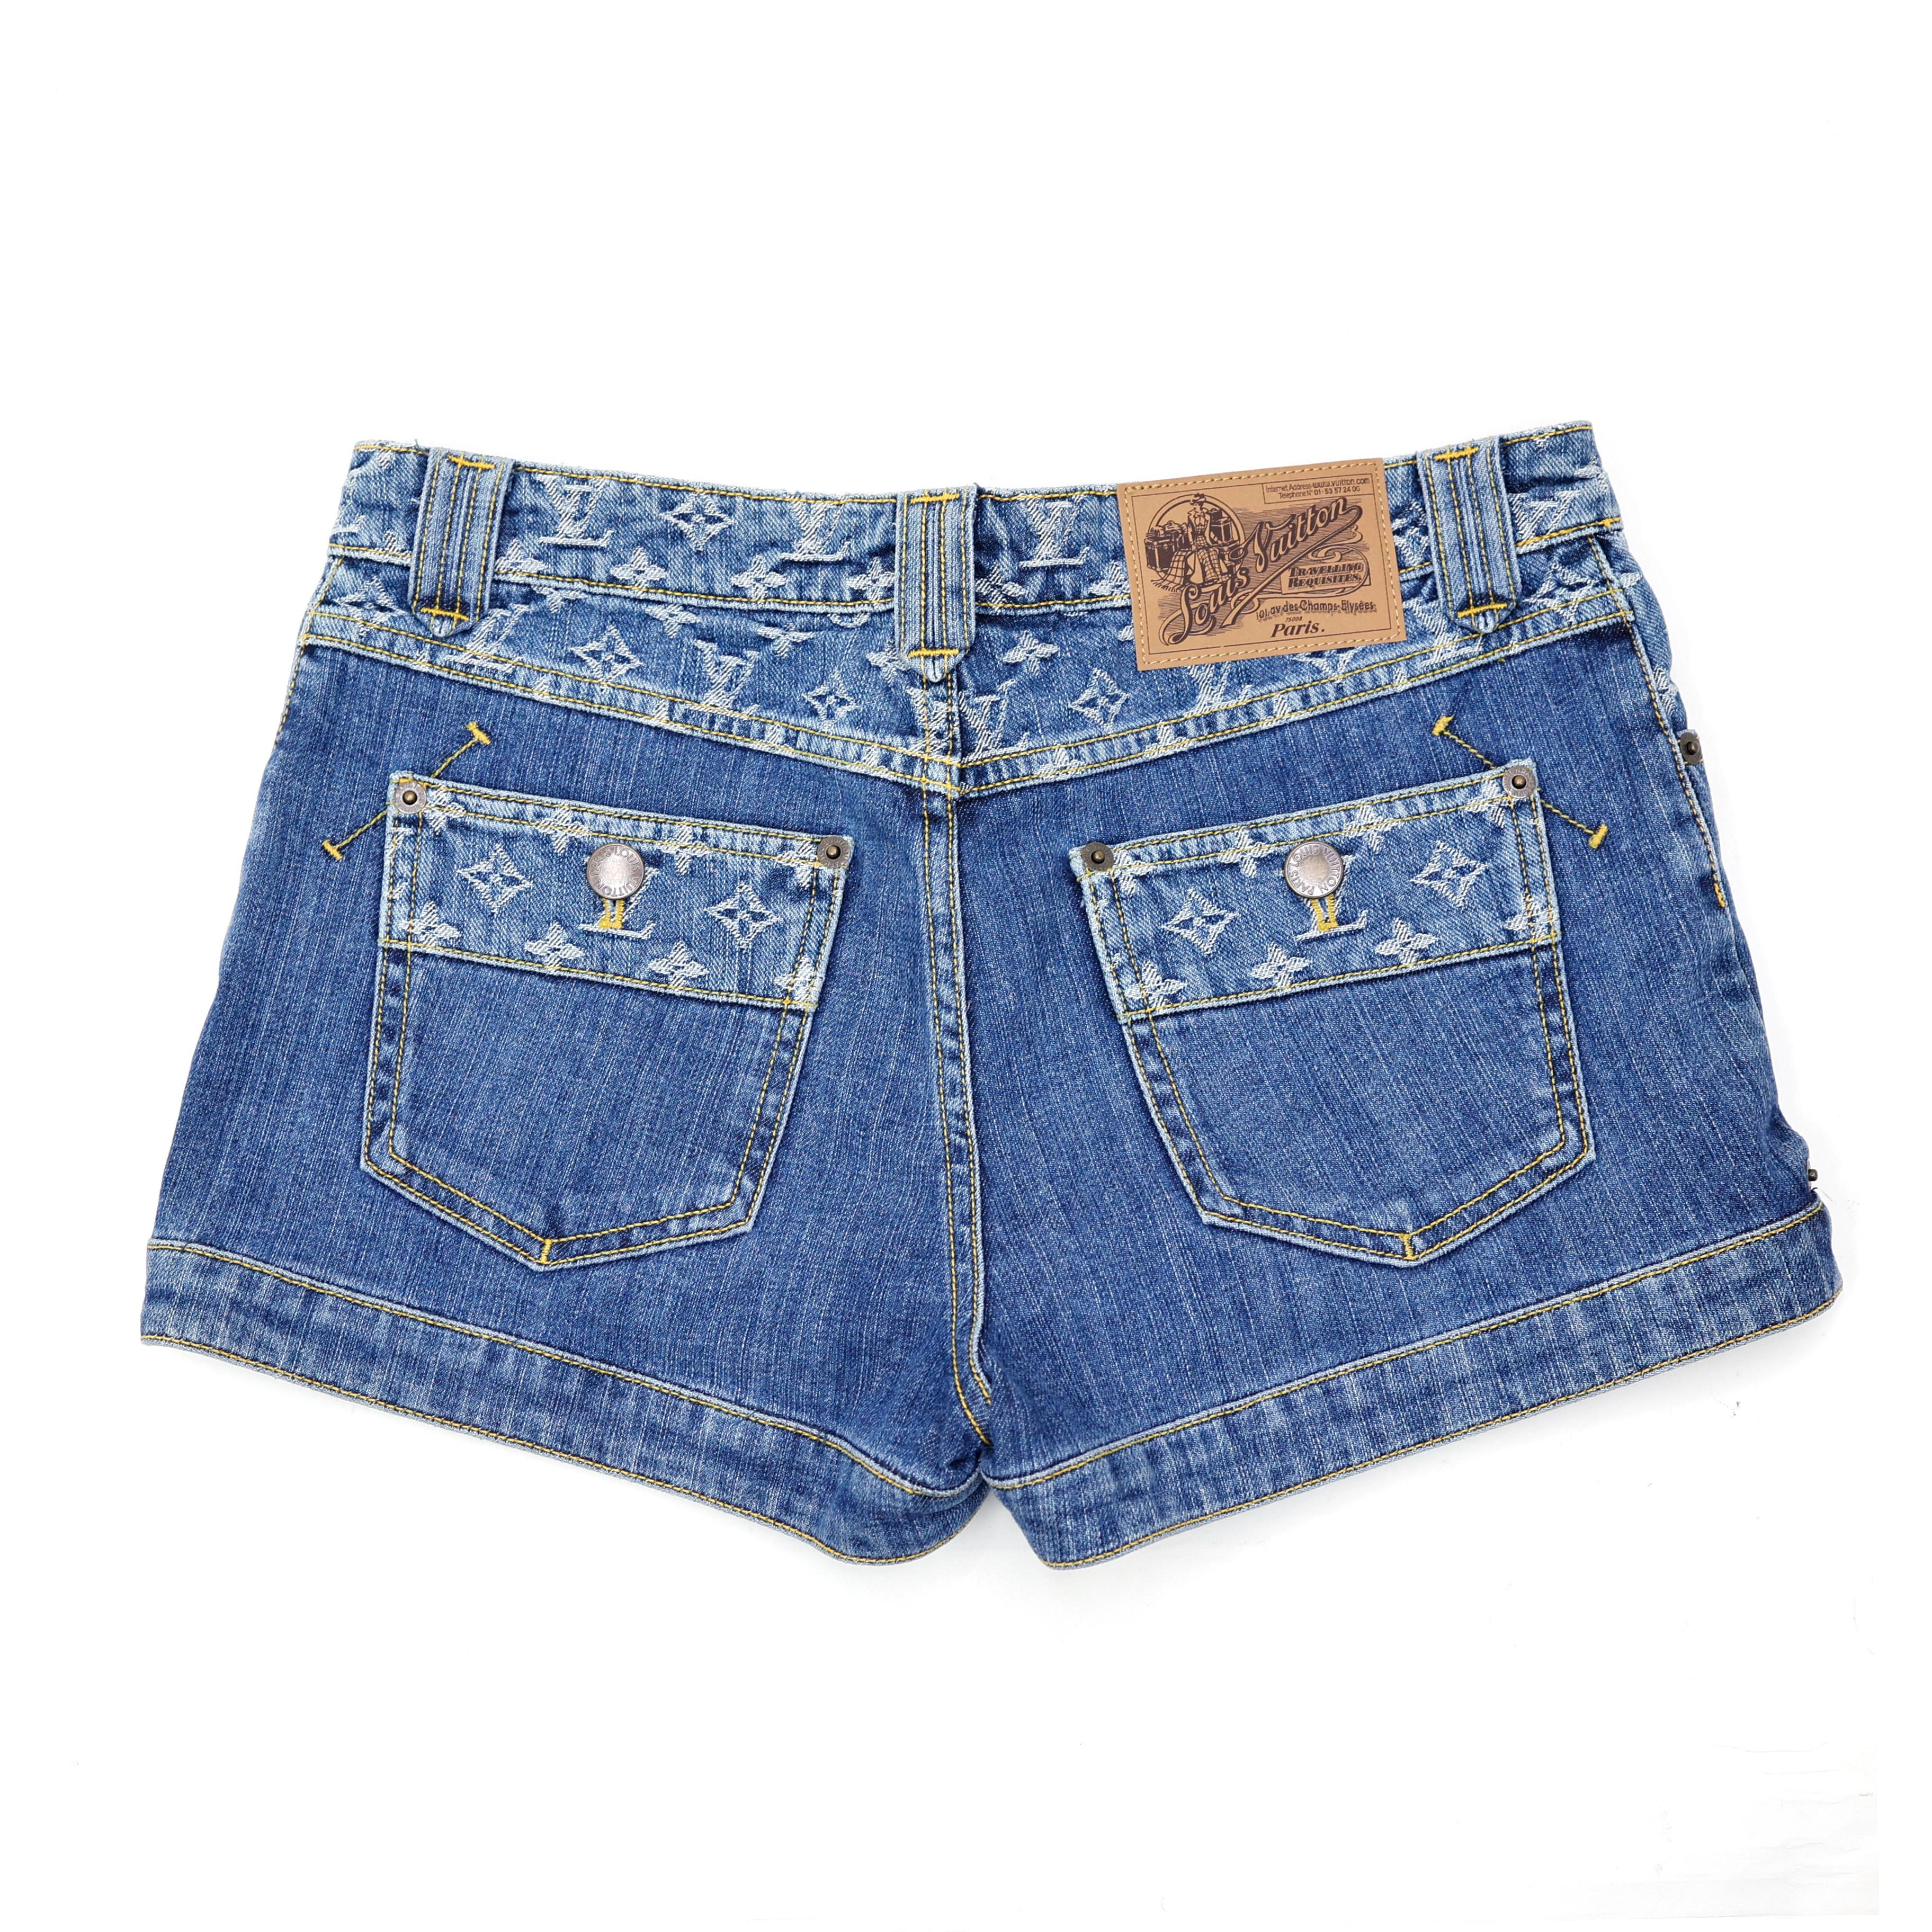 Louis Vuitton Mini Shorts in Denim - Jeans For Sale 2